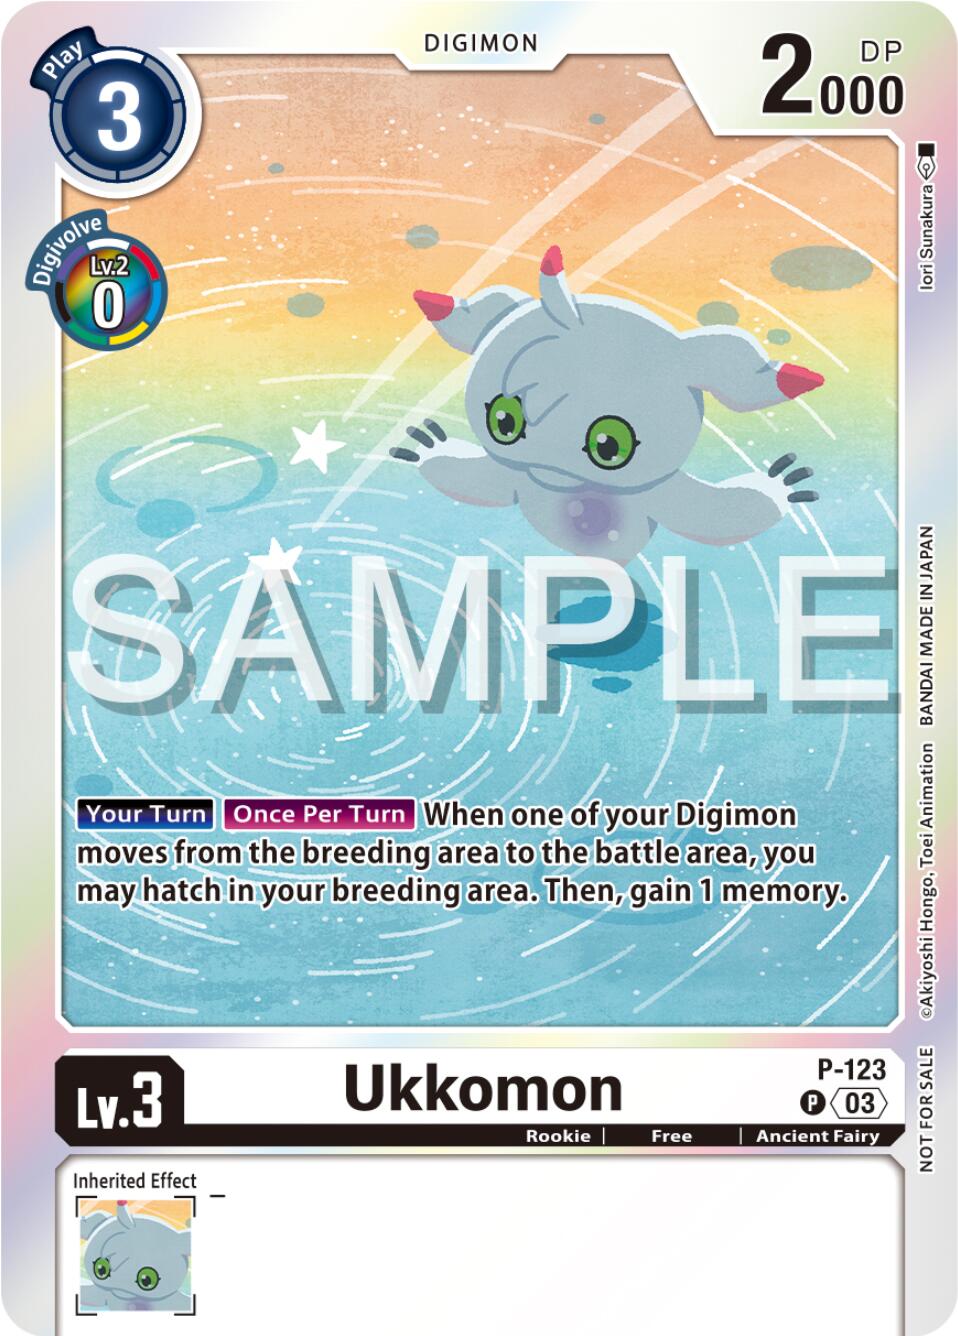 Ukkomon [P-123] (Beginning Observer Pre-Release Winner) [Promotional Cards] | Total Play